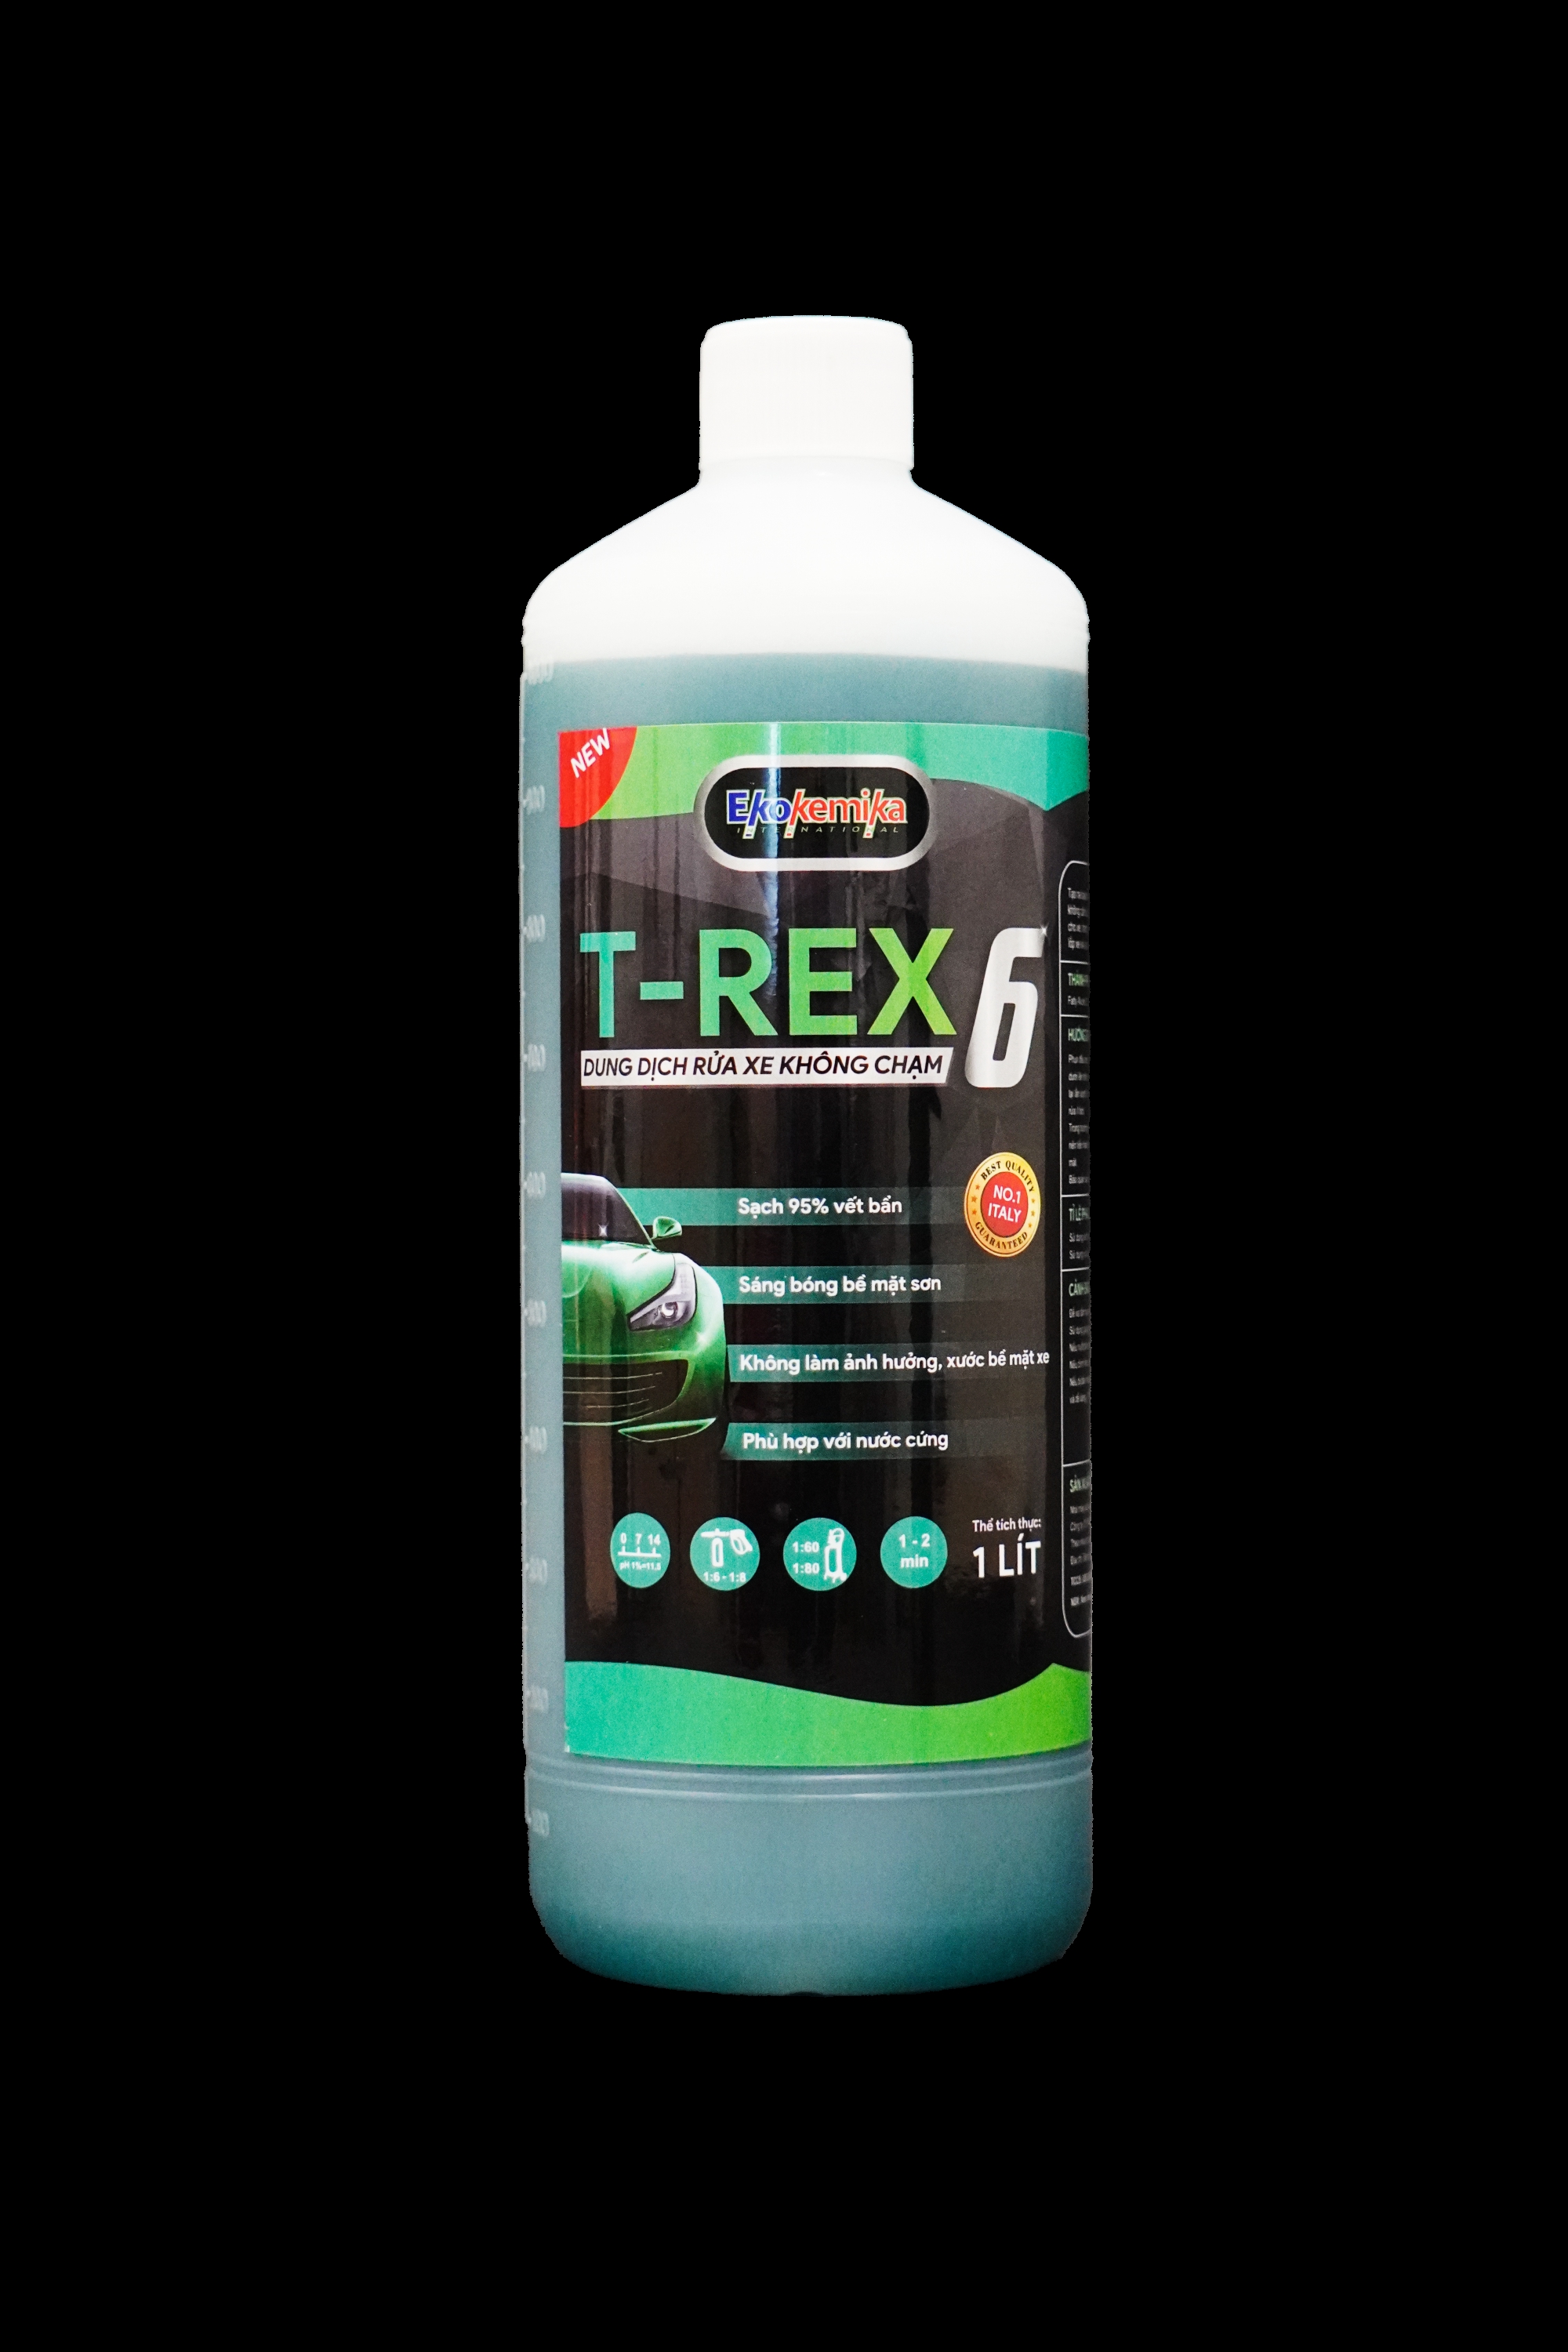 Dung dịch rửa xe không chạm T-Rex 6